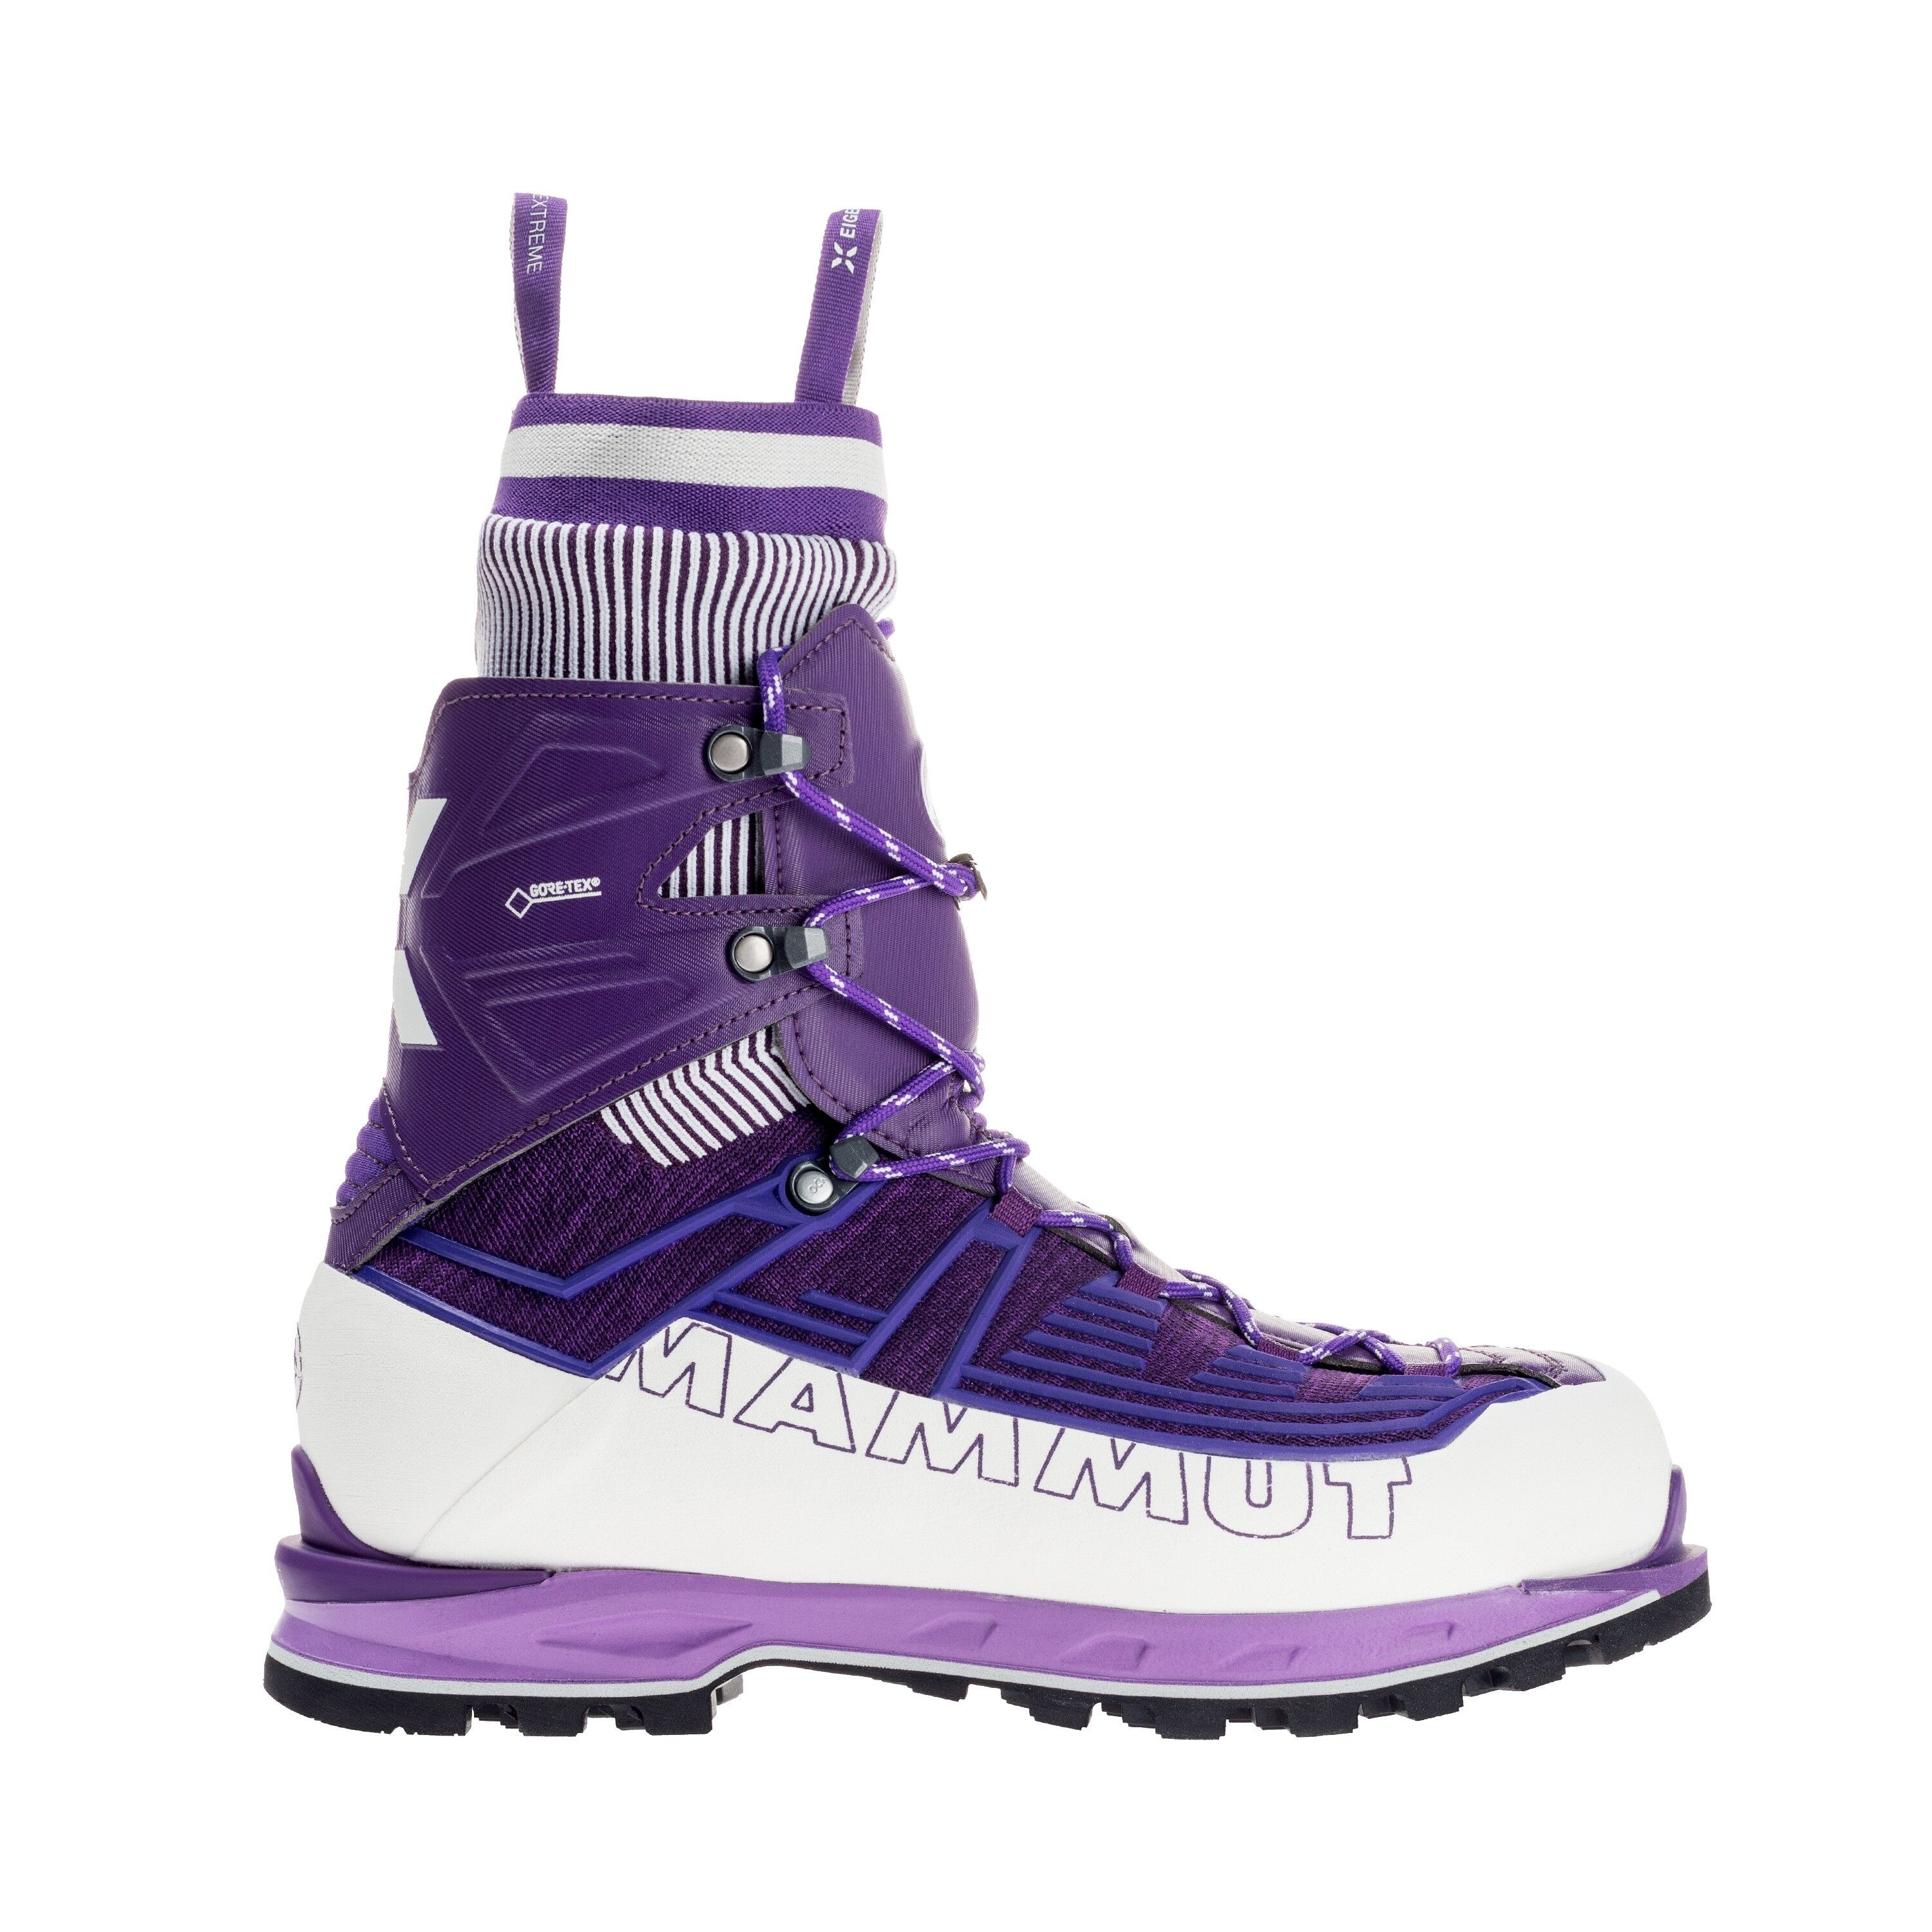 Mammut Nordwand Knit High GTX® - Mountaineering Boots - Women's